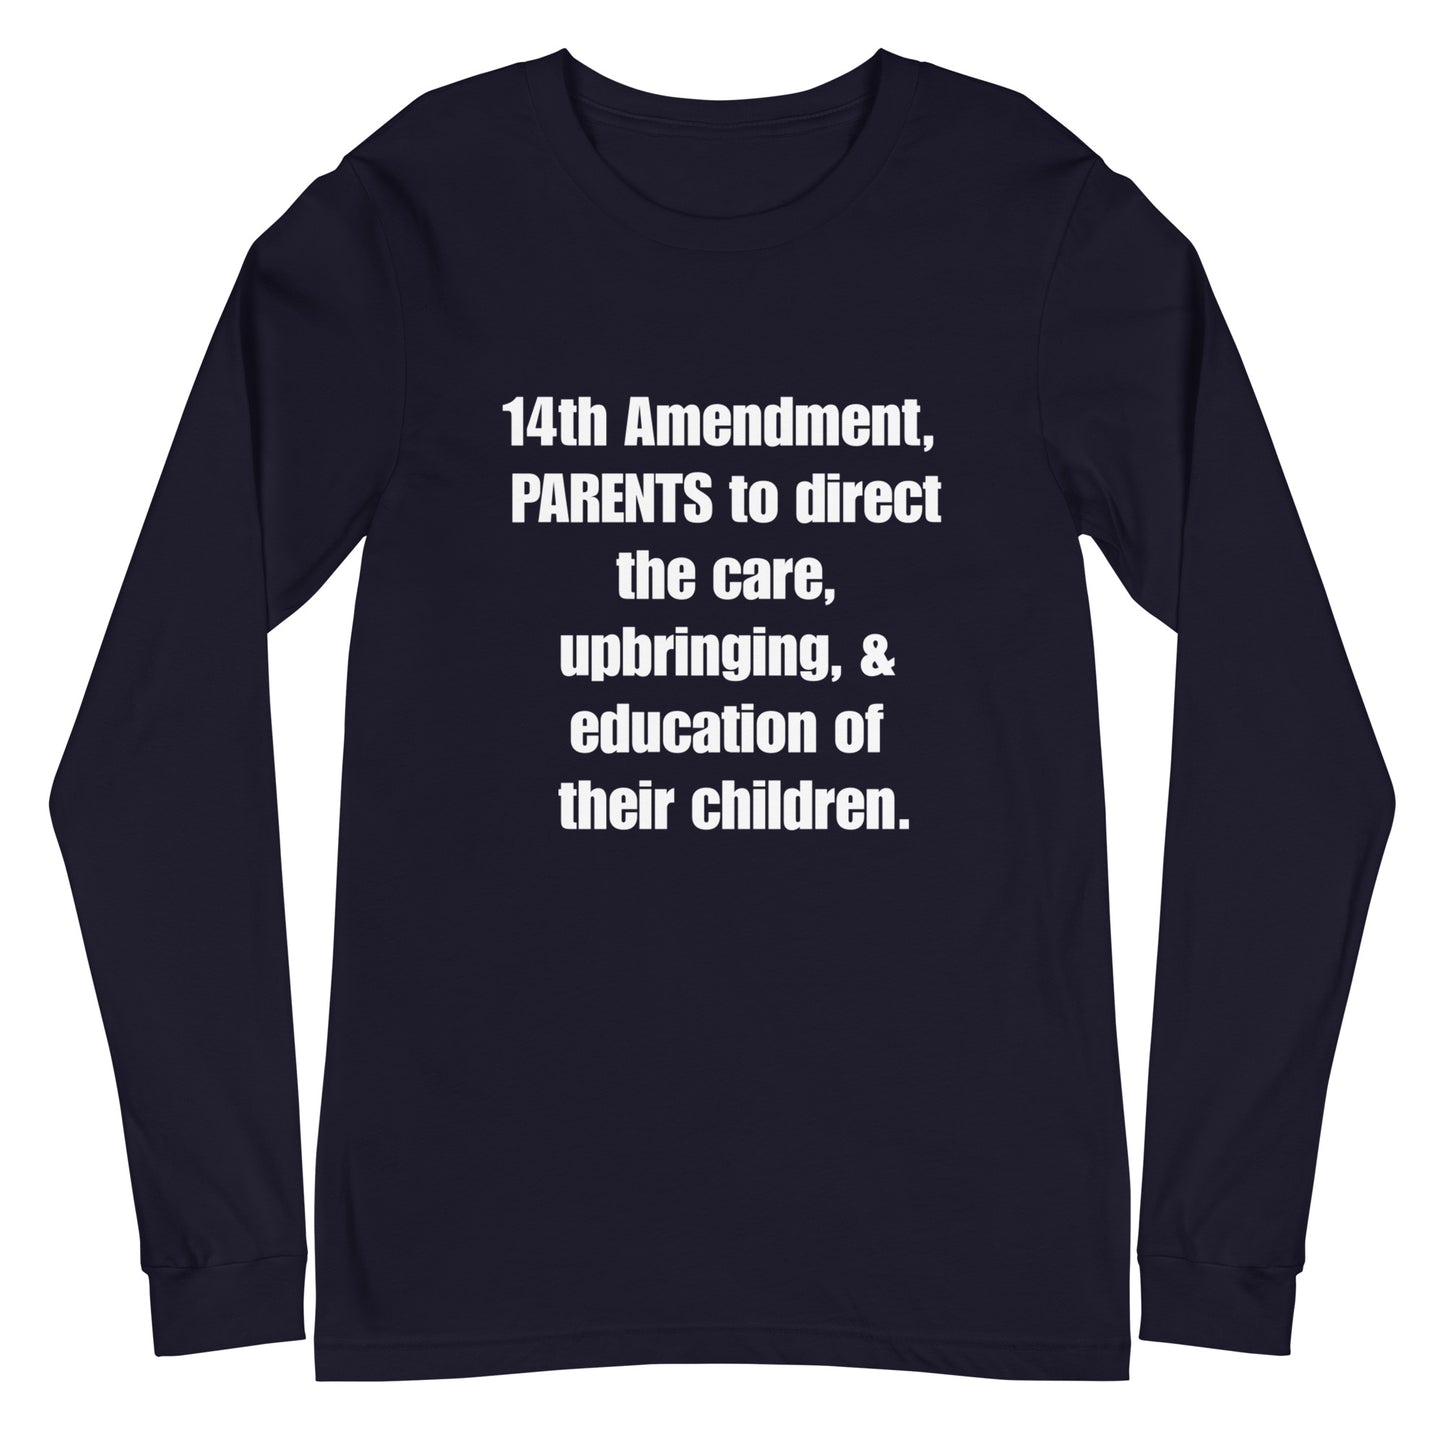 14th Amendment for Parents